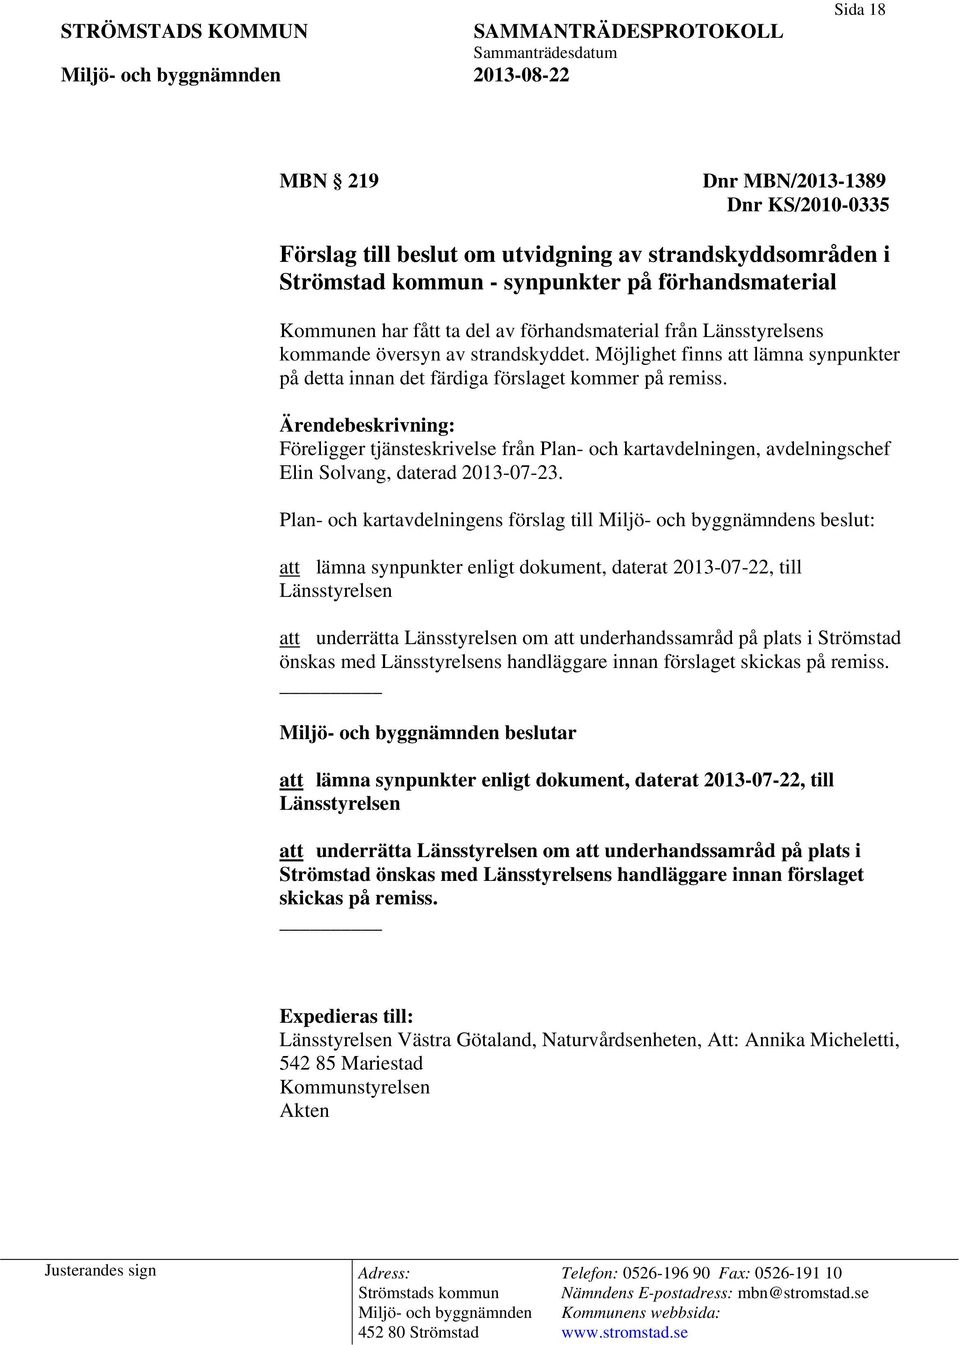 Ärendebeskrivning: Föreligger tjänsteskrivelse från Plan- och kartavdelningen, avdelningschef Elin Solvang, daterad 2013-07-23.